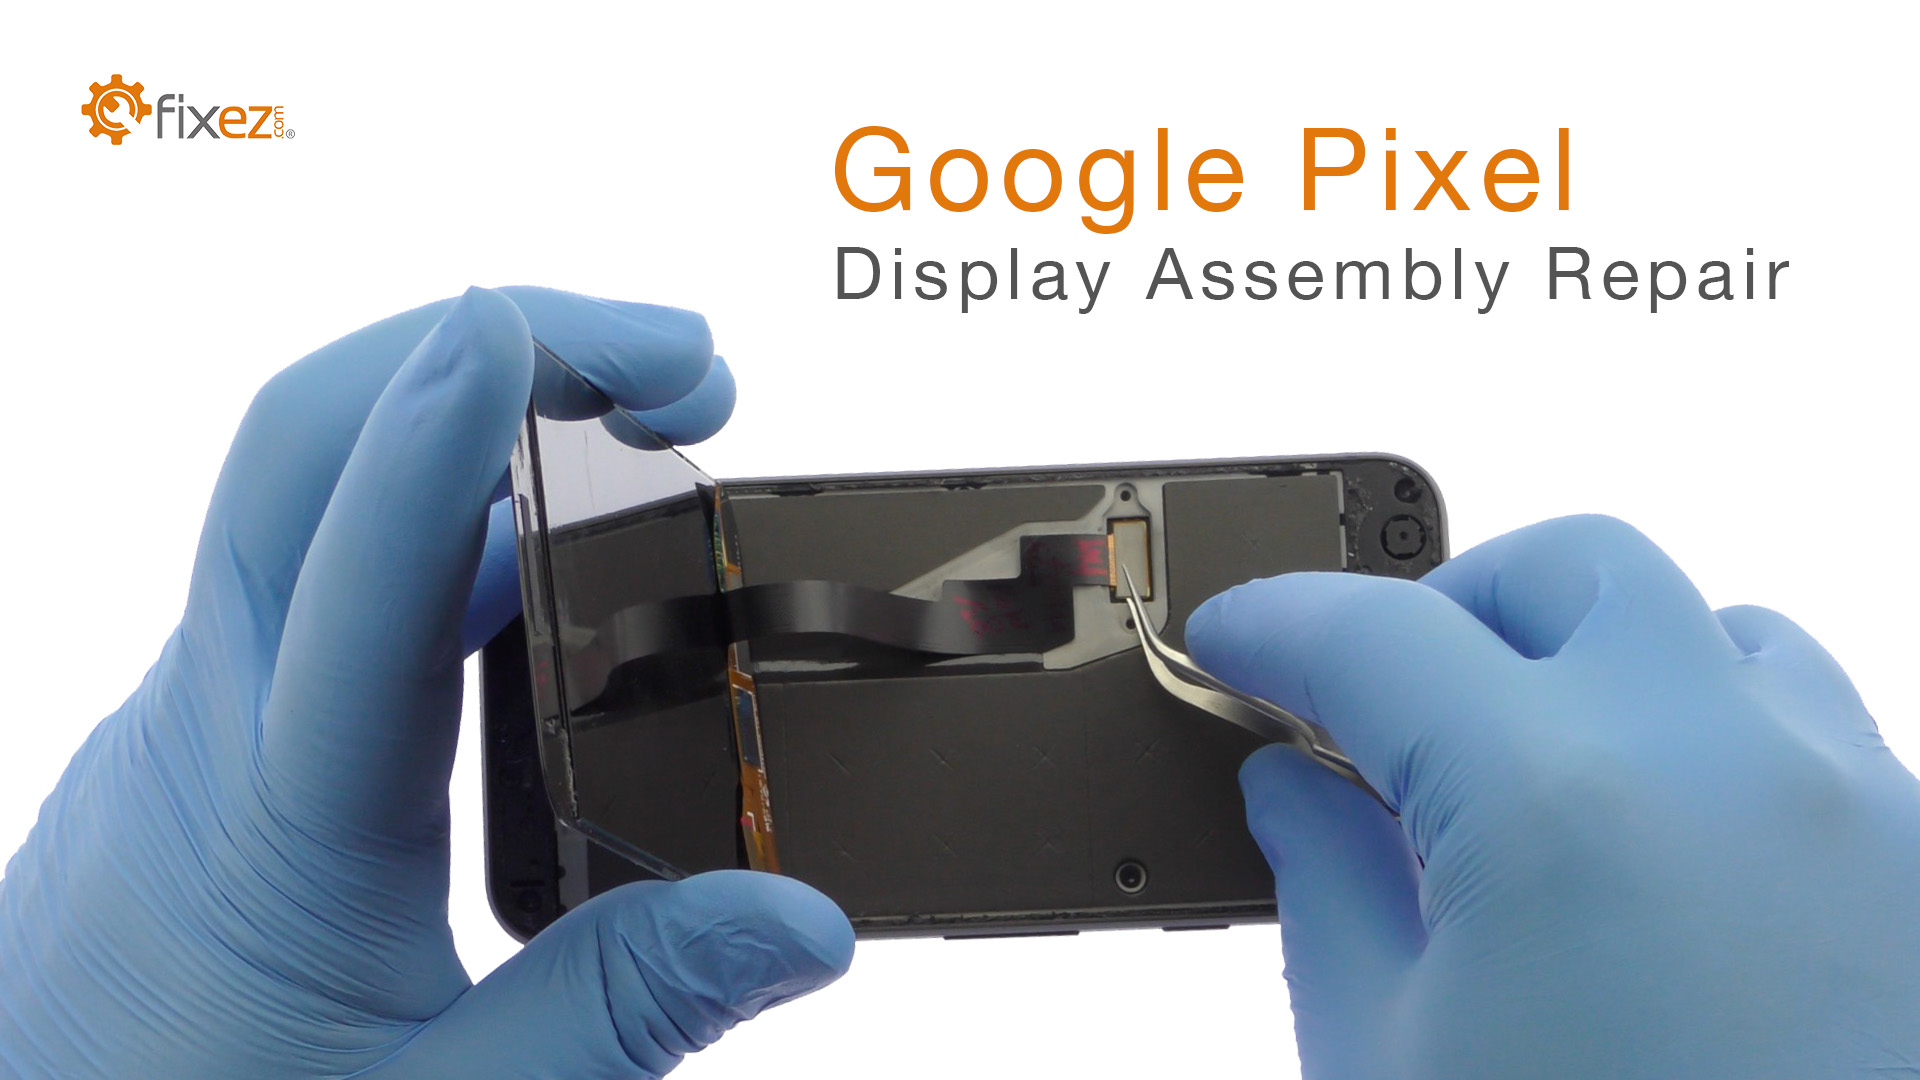 Google Pixel Display Assembly Repair